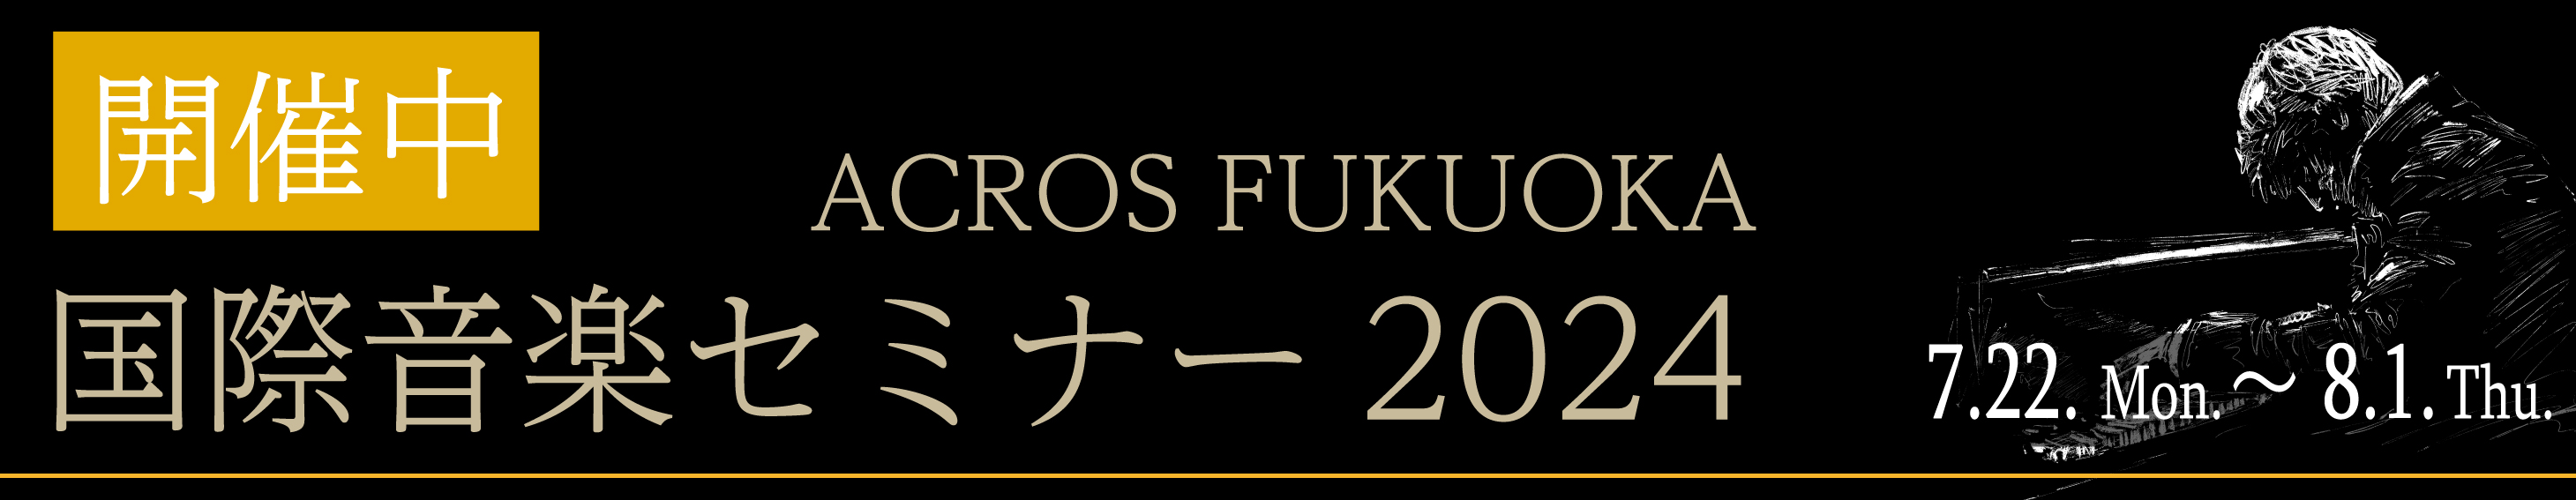 ACROS FUKUOKA 国際音楽セミナー 2024